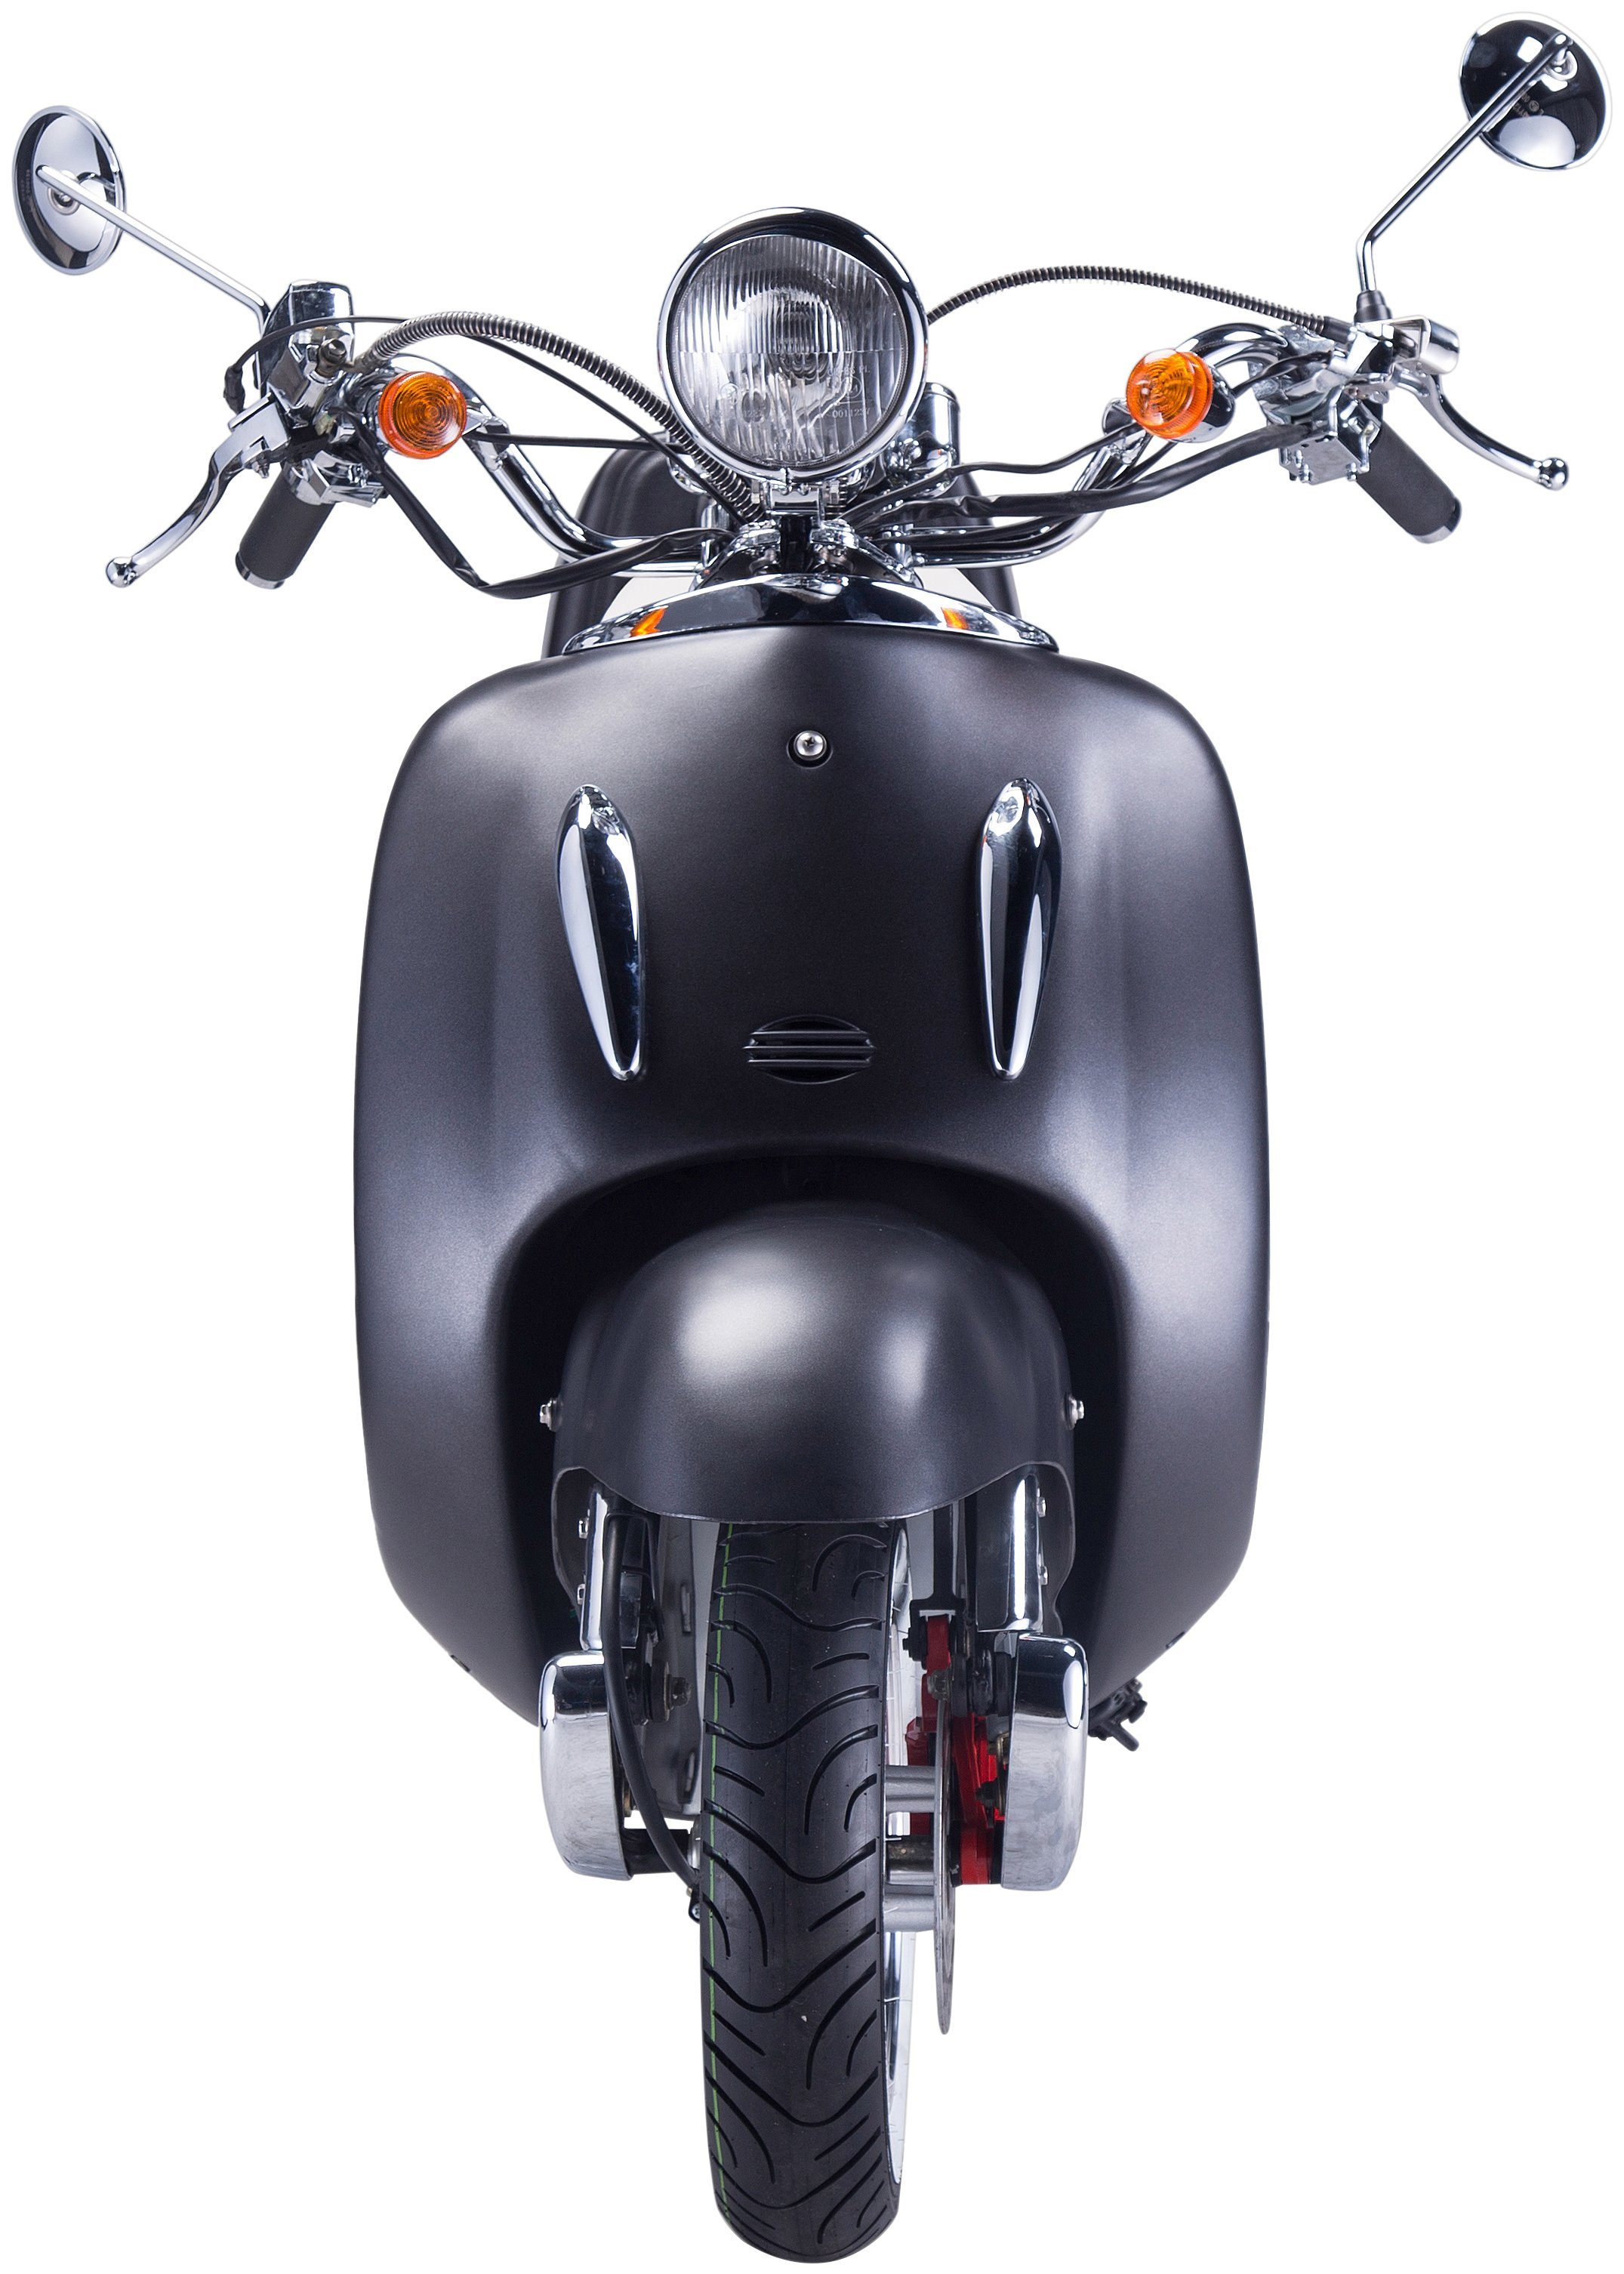 Motorroller 5, 85 (Set), 125 schwarz/silberfarben ccm, GT UNION km/h, Euro Topcase Strada, mit